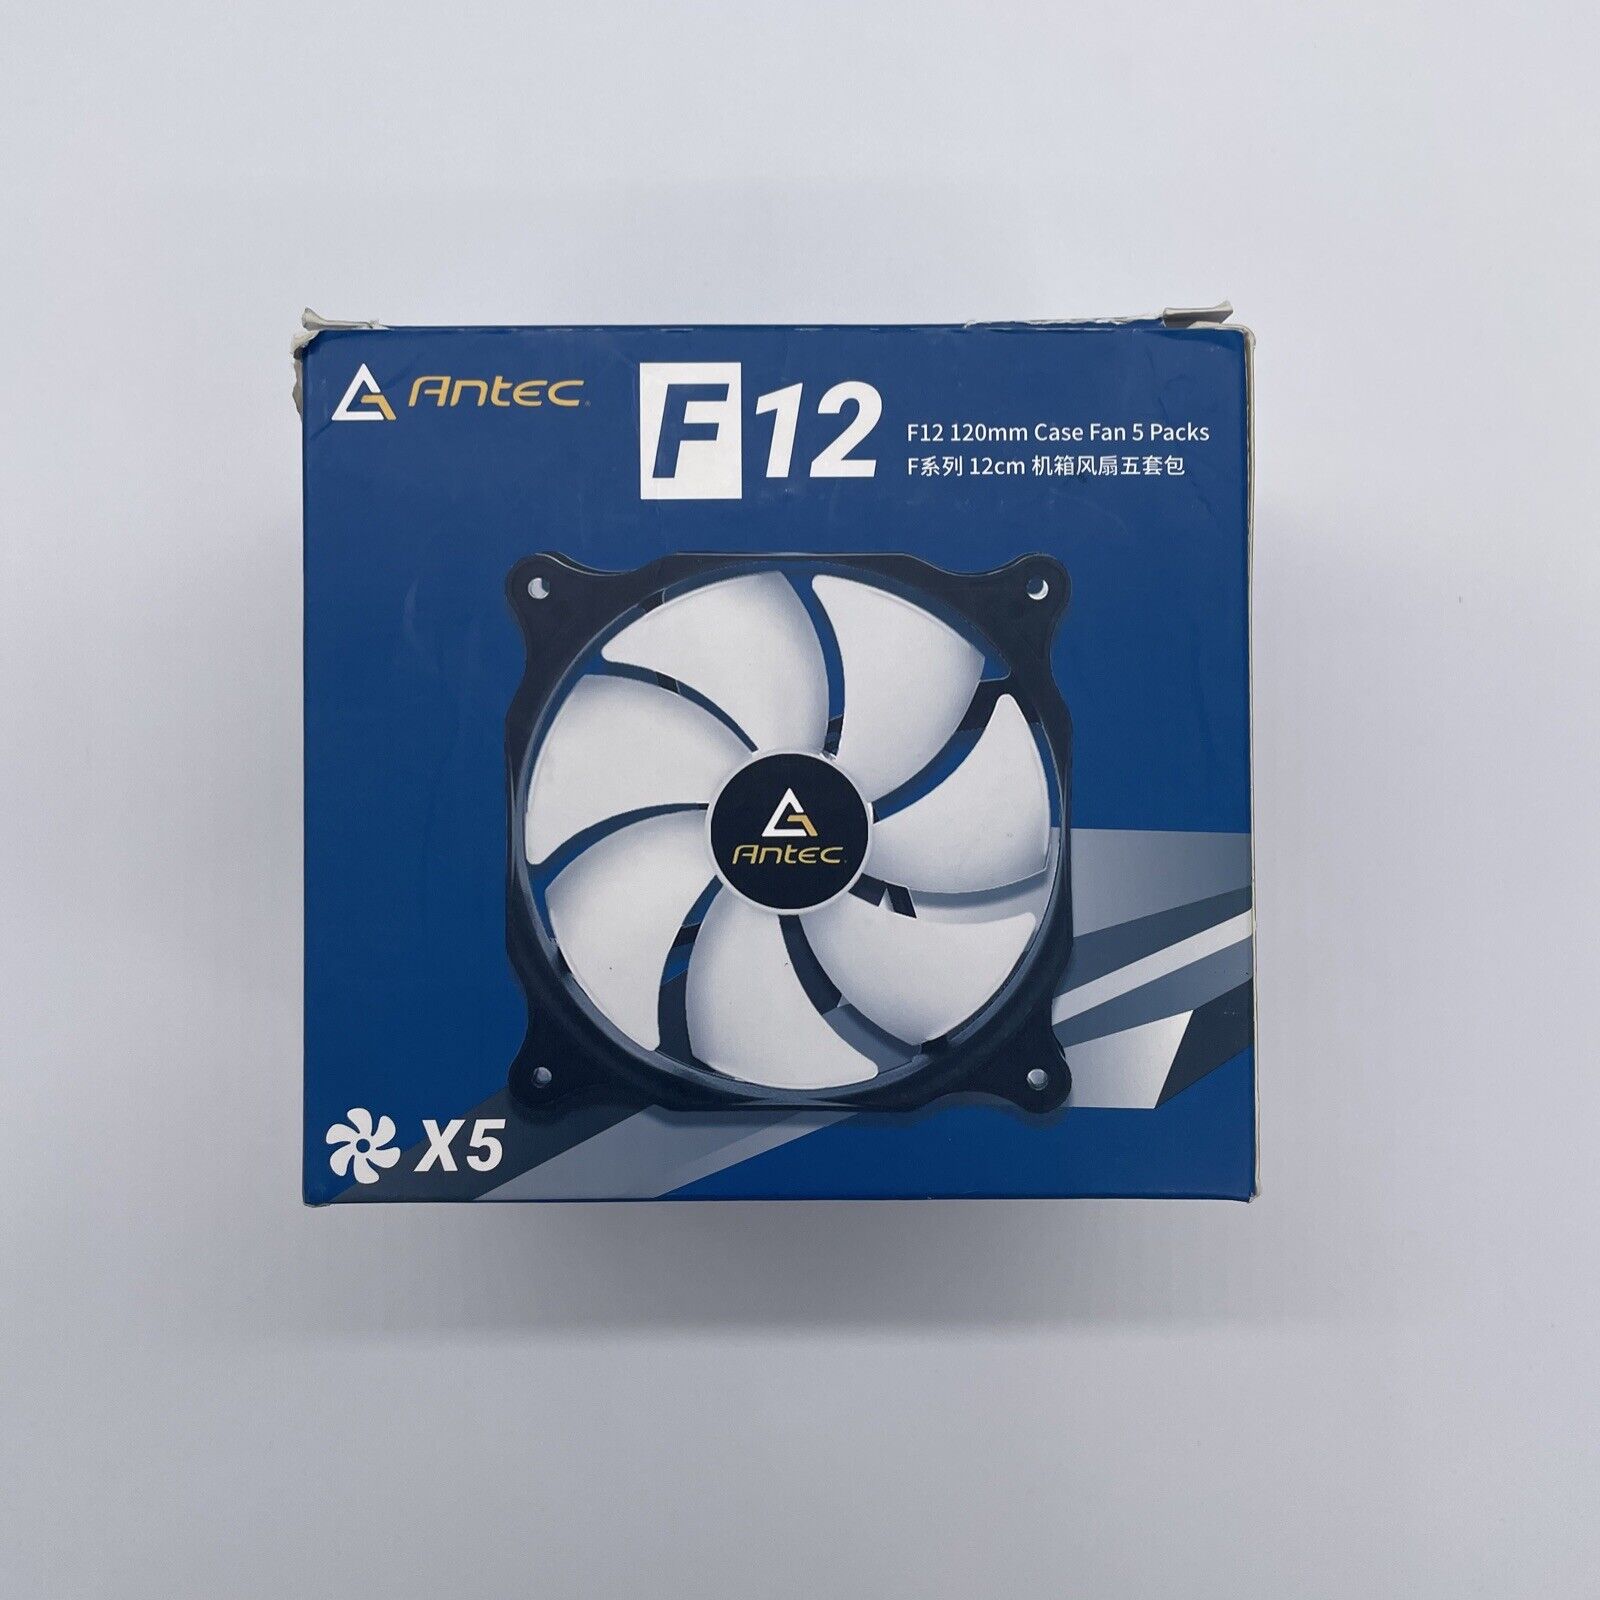 Antec F12 120mm Case Fan